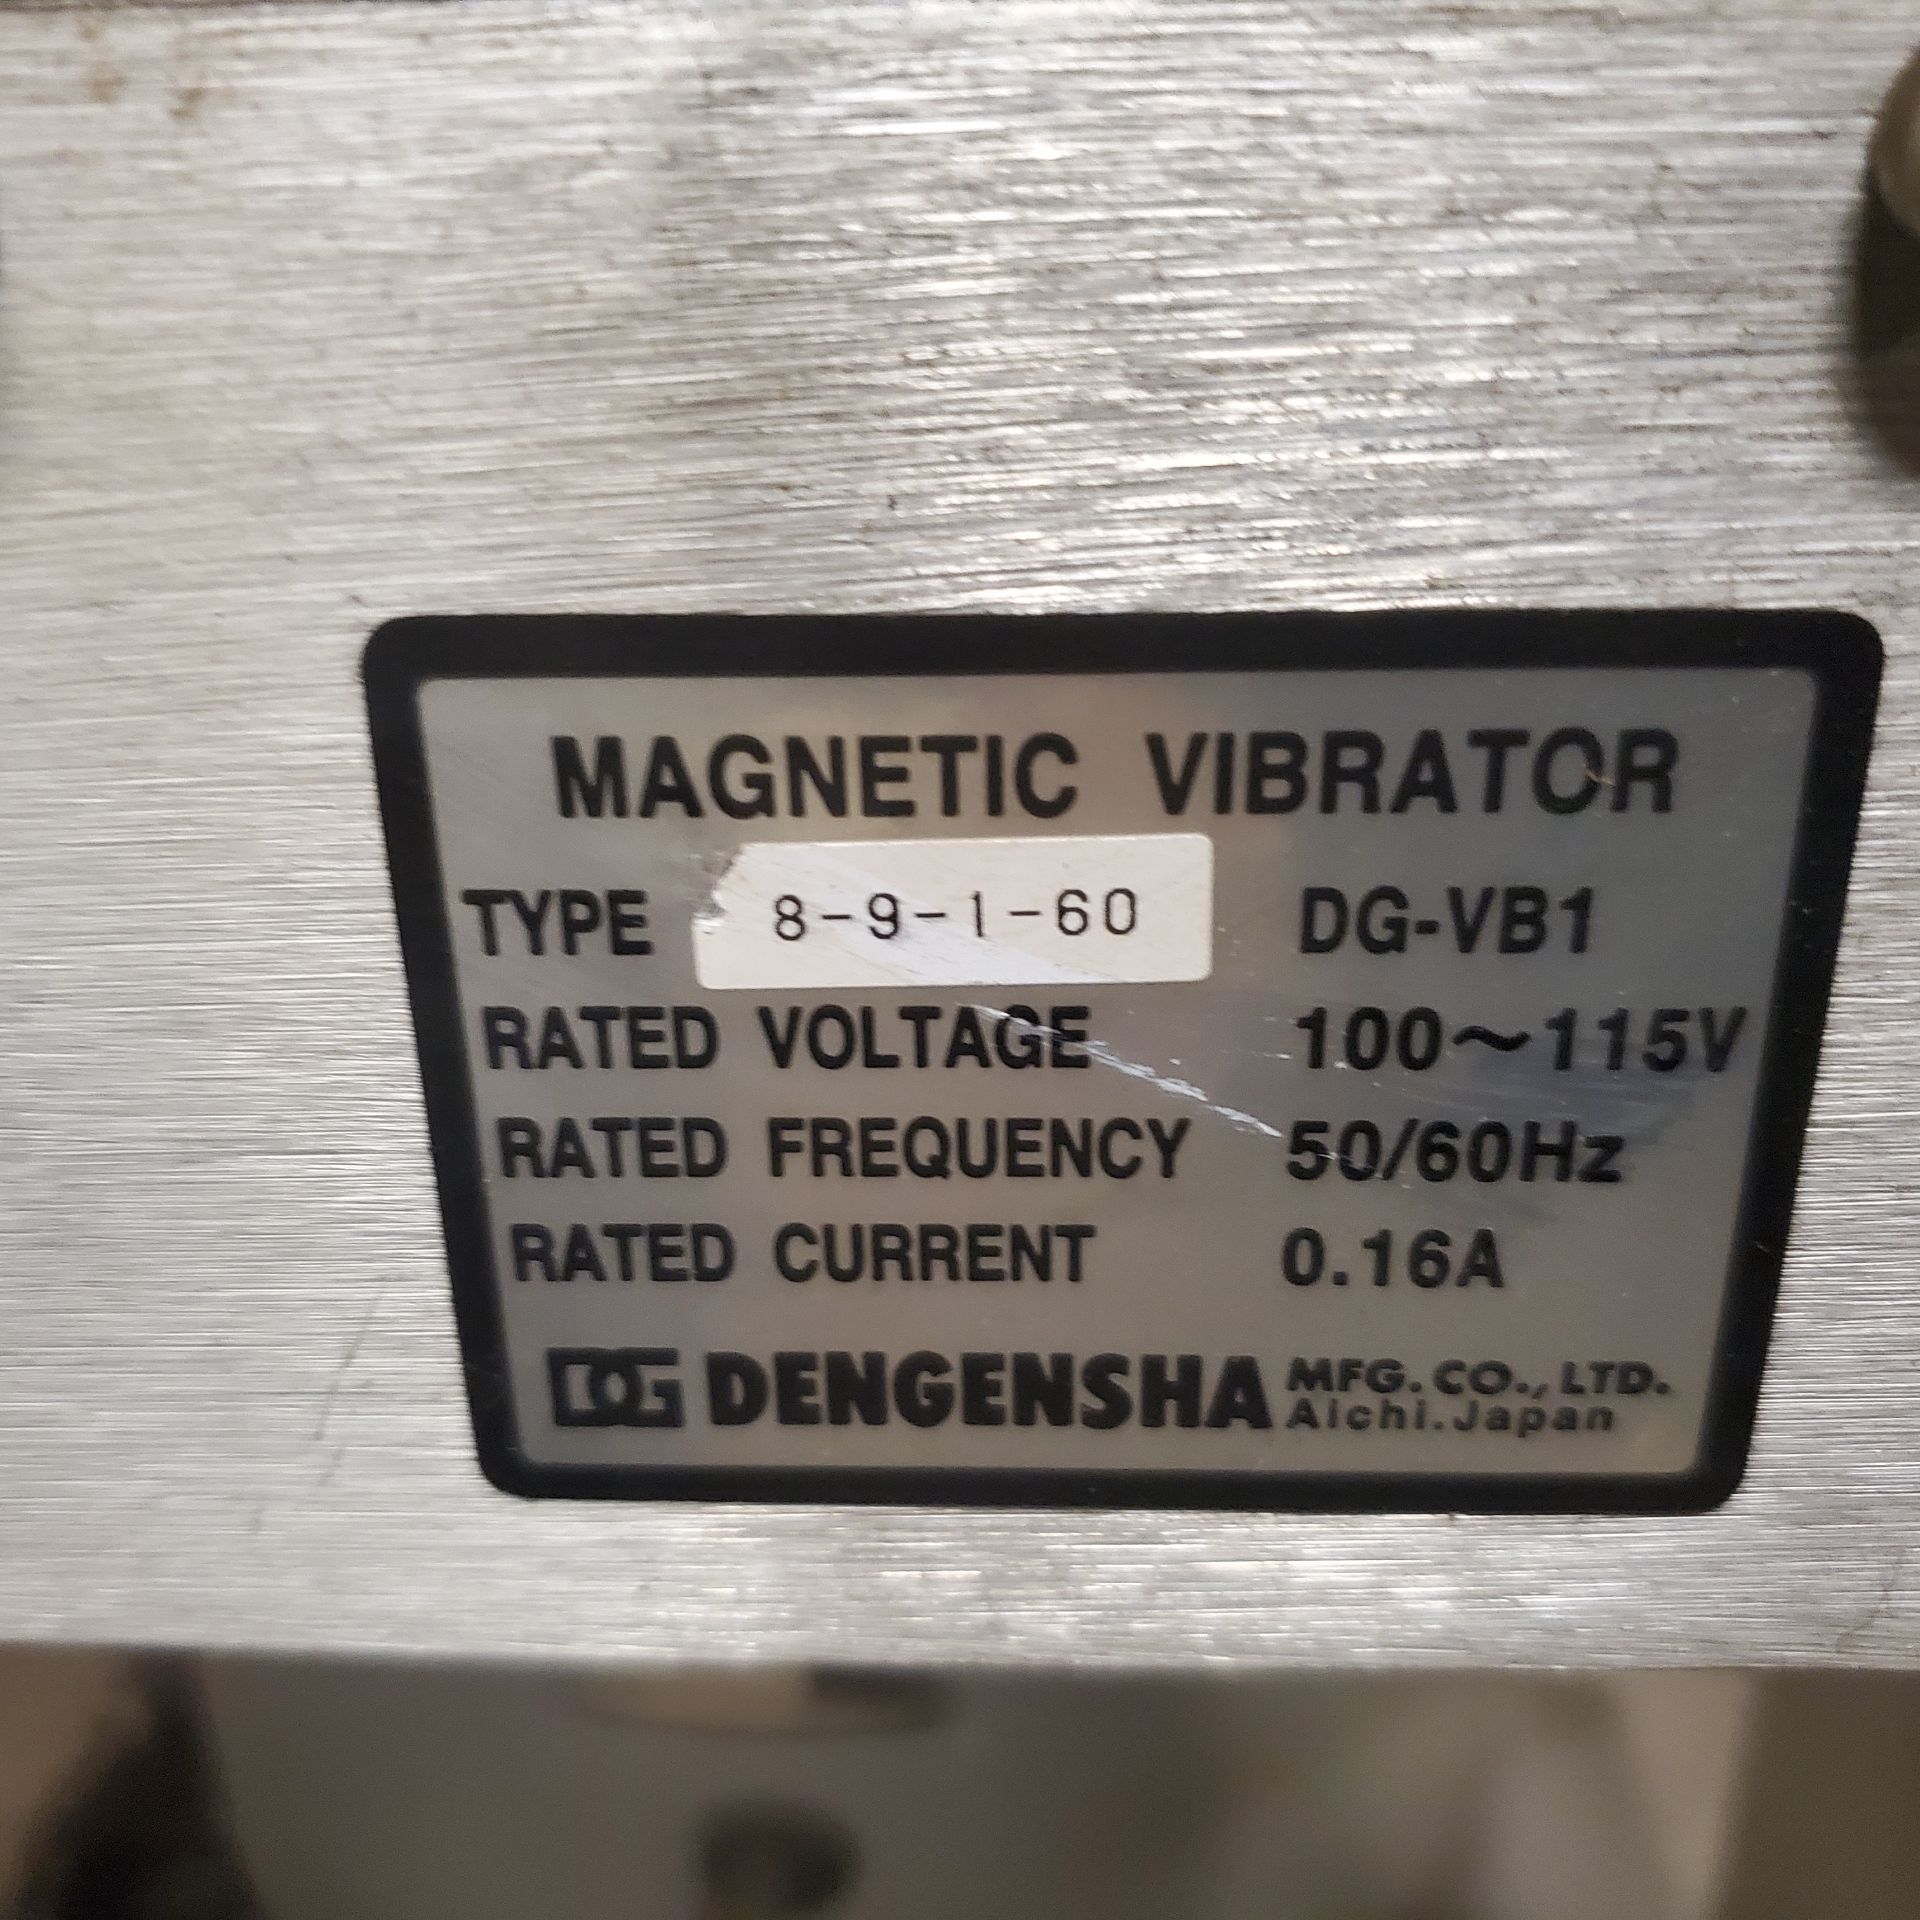 Dengensha Vibratory Parts Feeder Model AF-VNS-S6-DLH w/ 12" Vibratory Feeder Bowl Type DG-VB1, 110 - Image 3 of 3